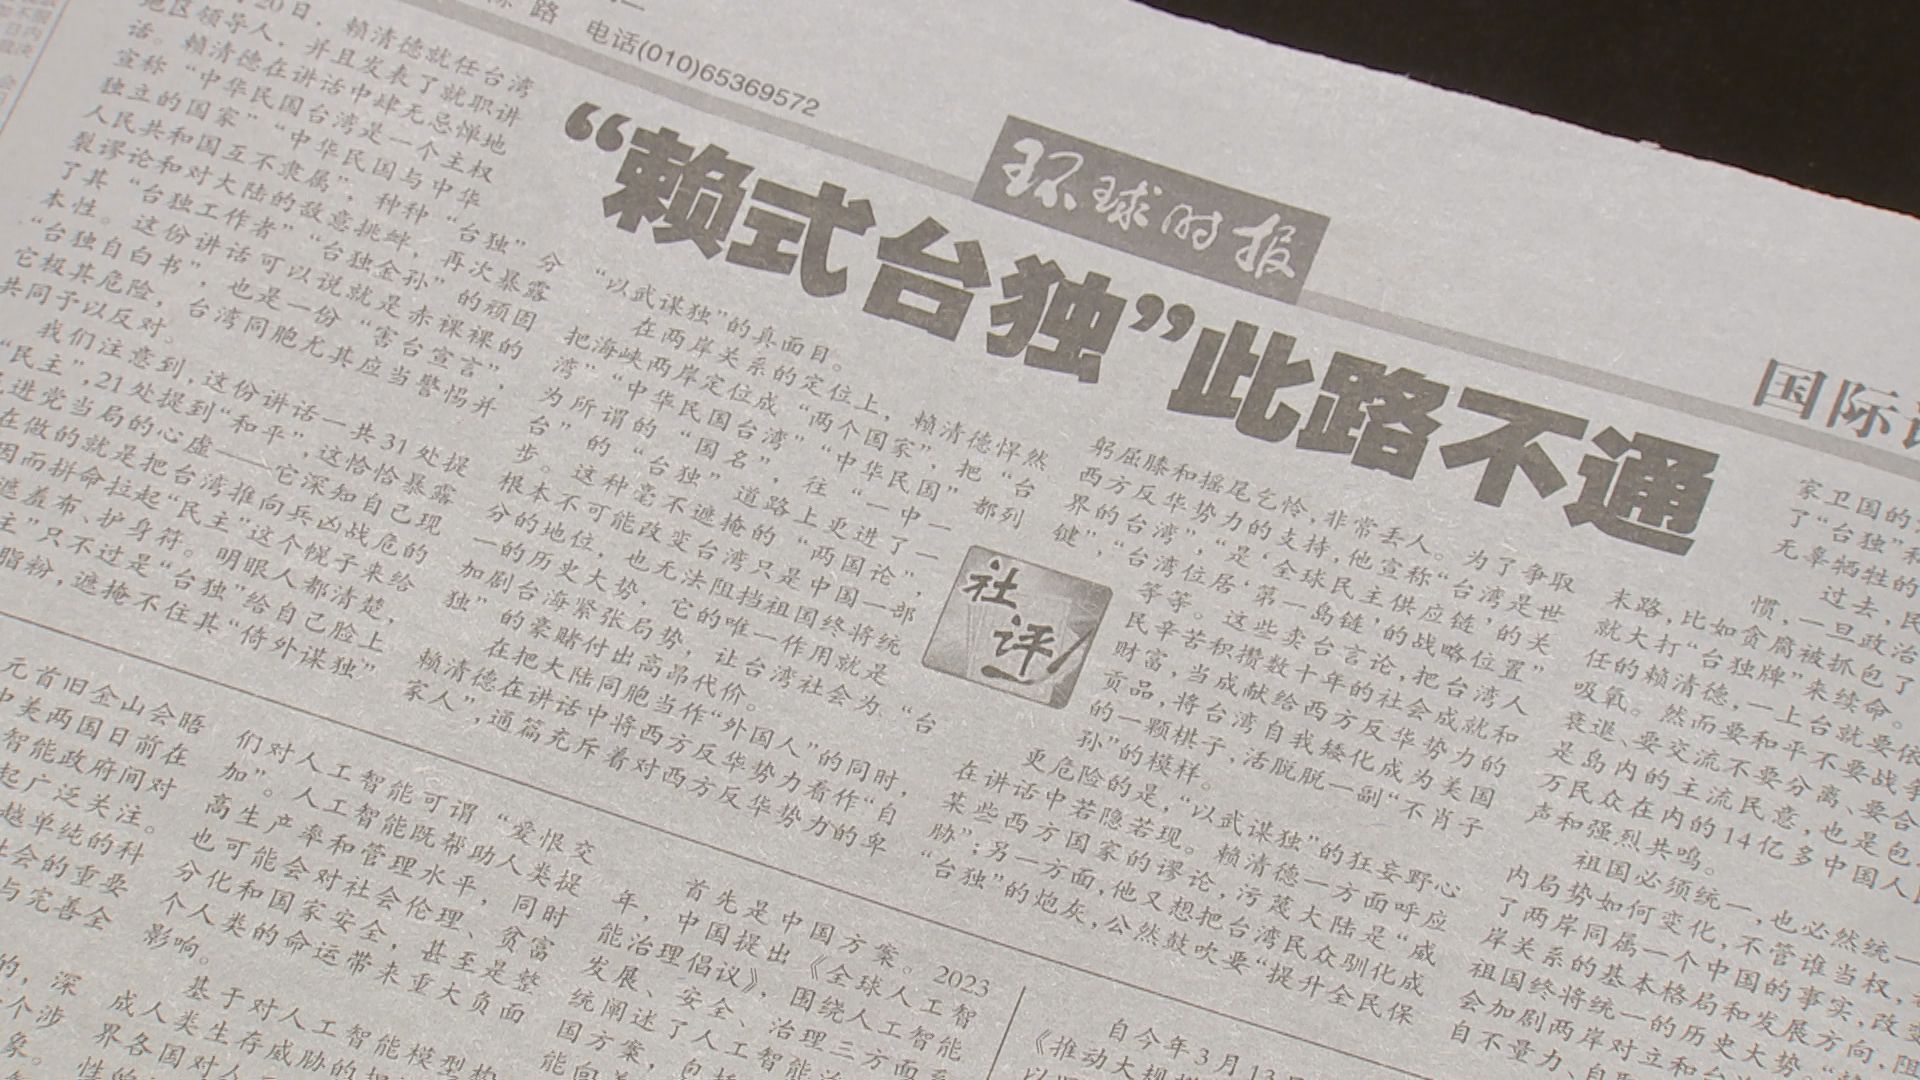 中国共産党国際紙「頼氏の台湾独立の道は行き止まり」と非難